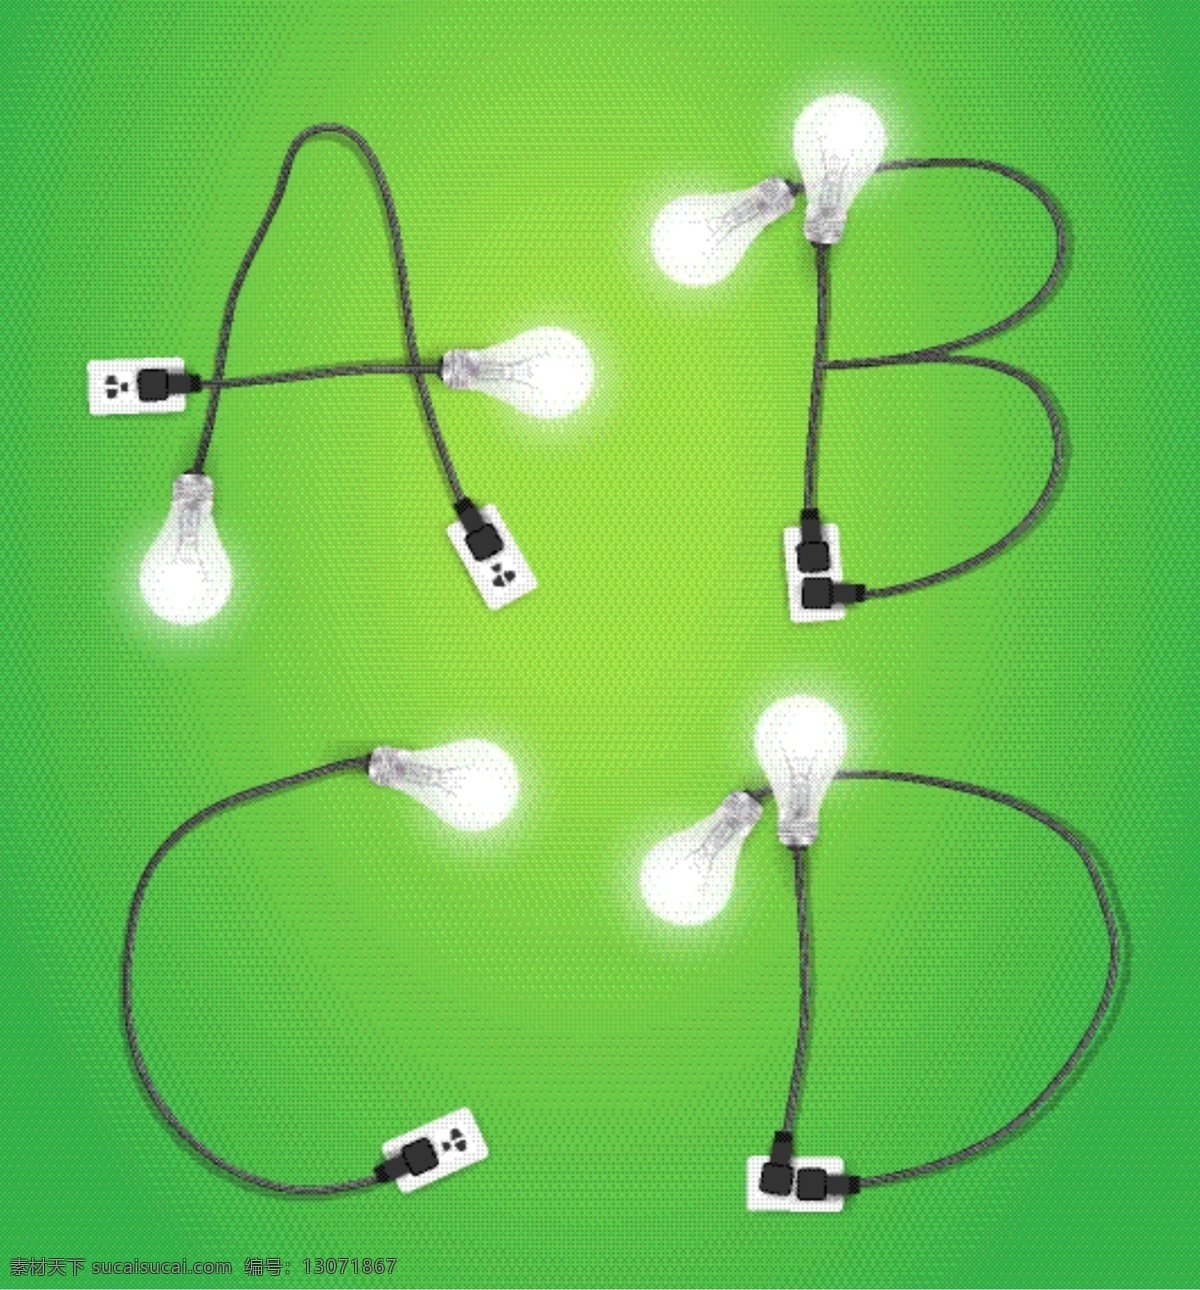 创意 英文 字母 电线 模板下载 abcd 字母电线 插座 插头 创意字母 环保灯 白炽灯 时尚创意灯泡 创意图片 生活百科 矢量素材 绿色